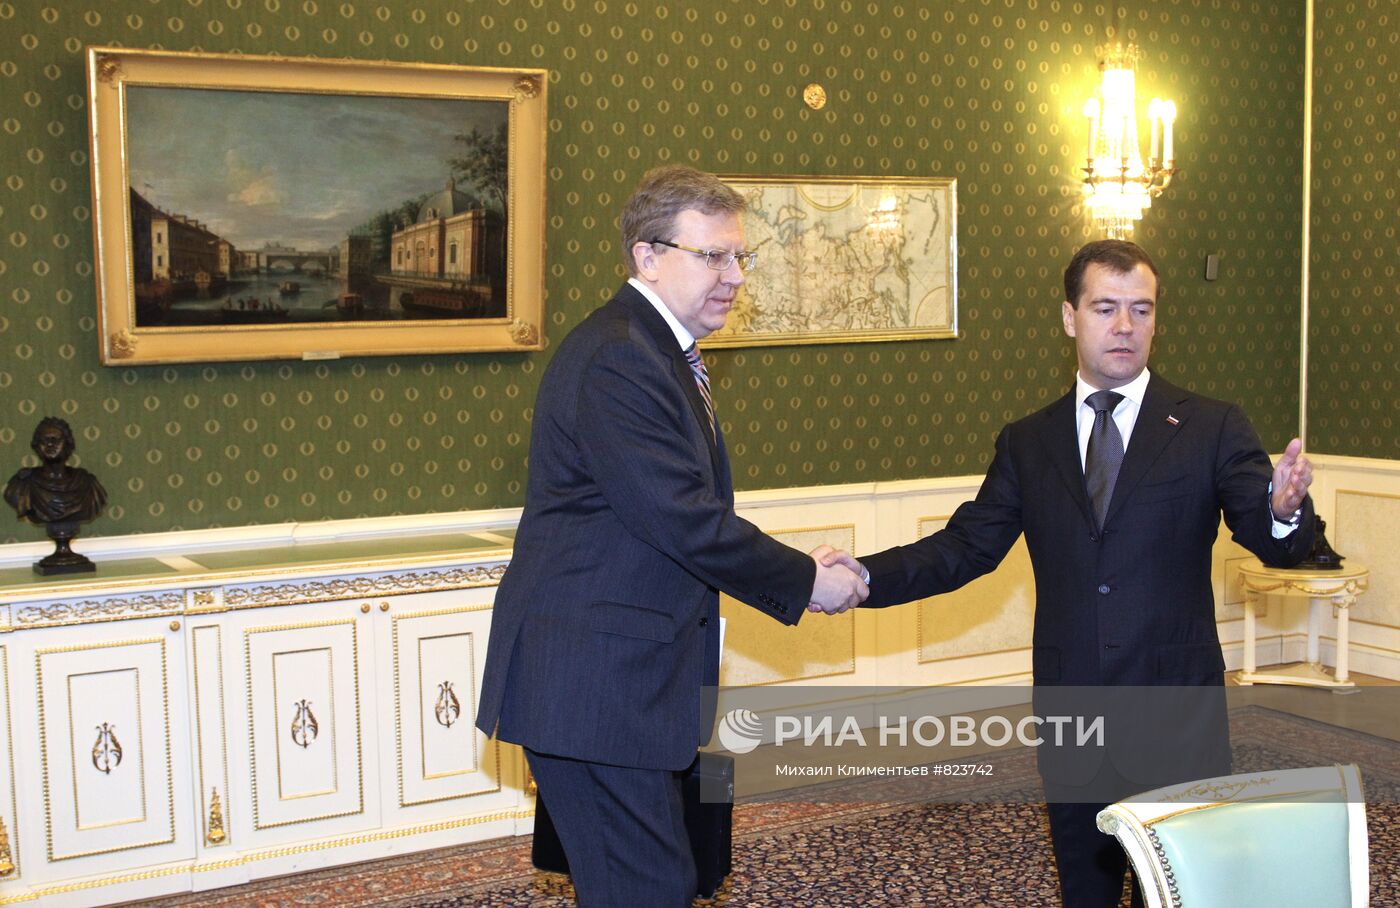 Дмитрий Медведев провел встречу с Алексеем Кудриным в Кремле